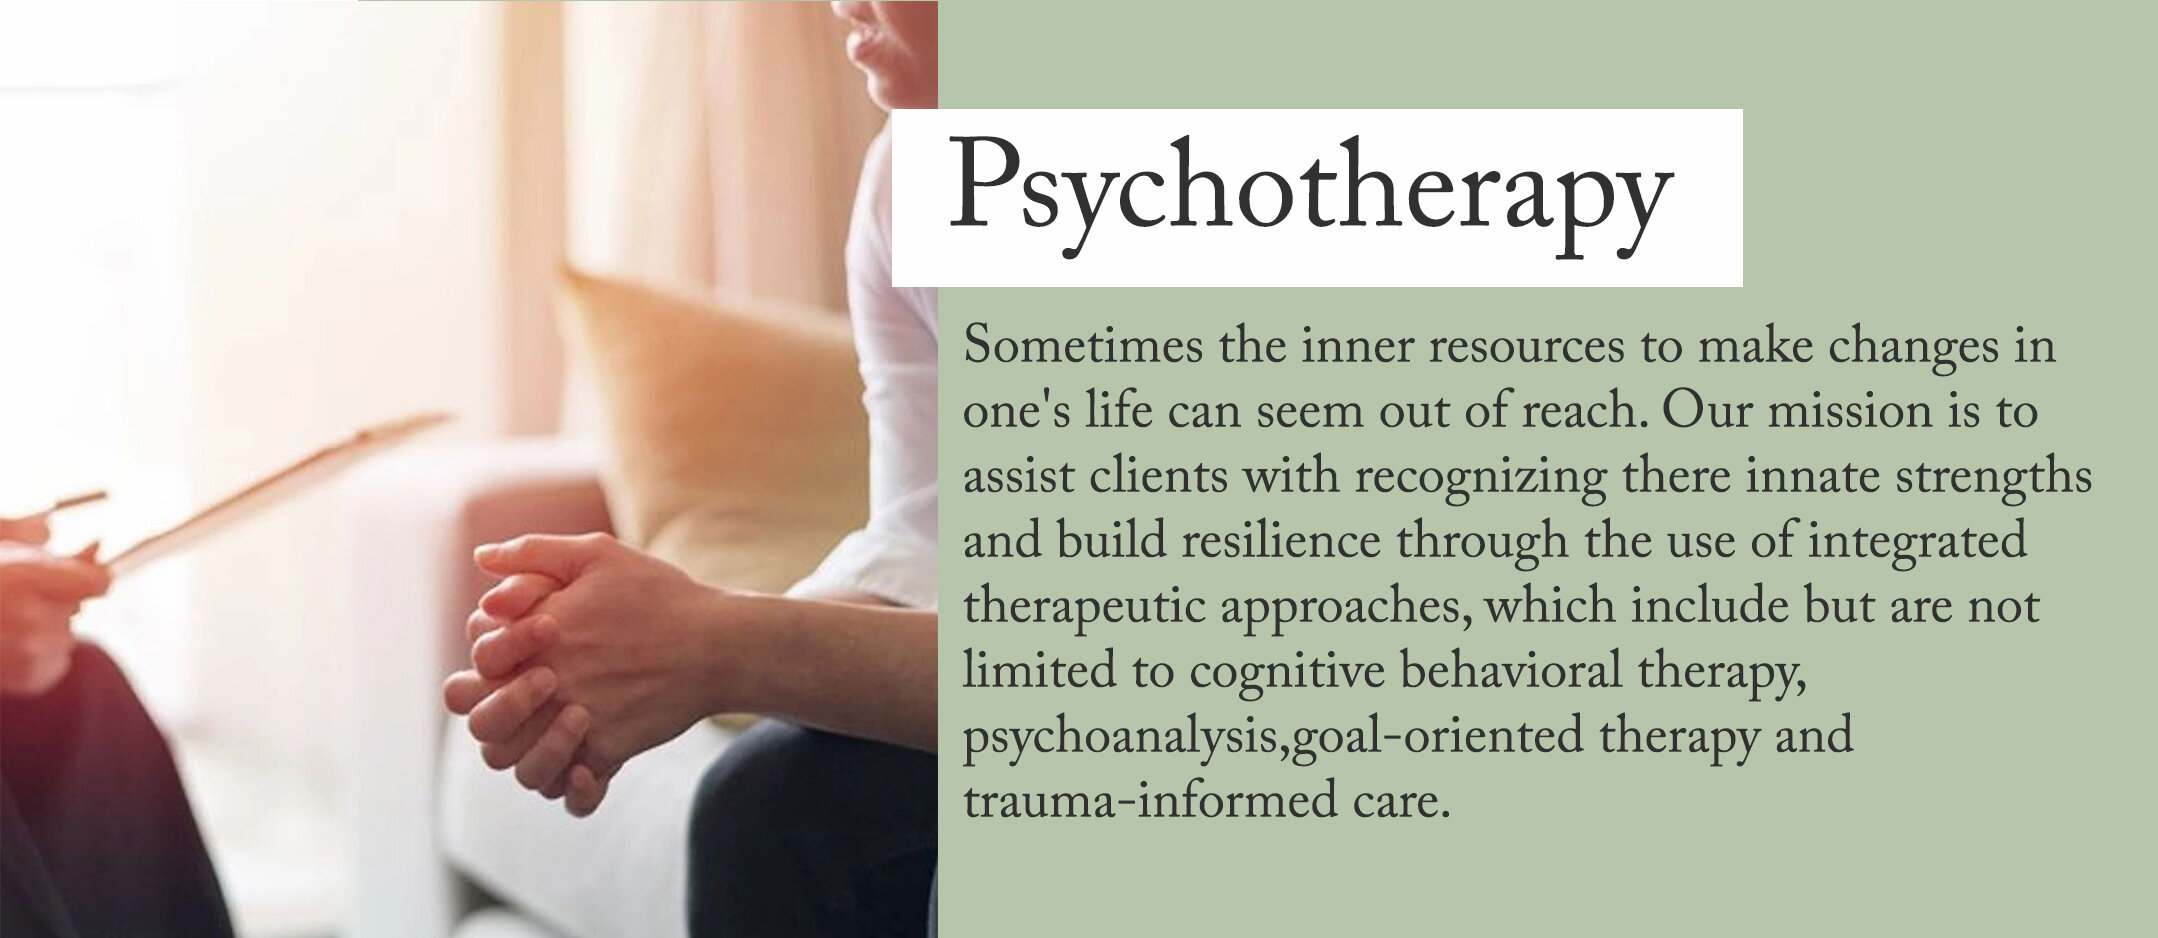 psychotherapy1.jpg